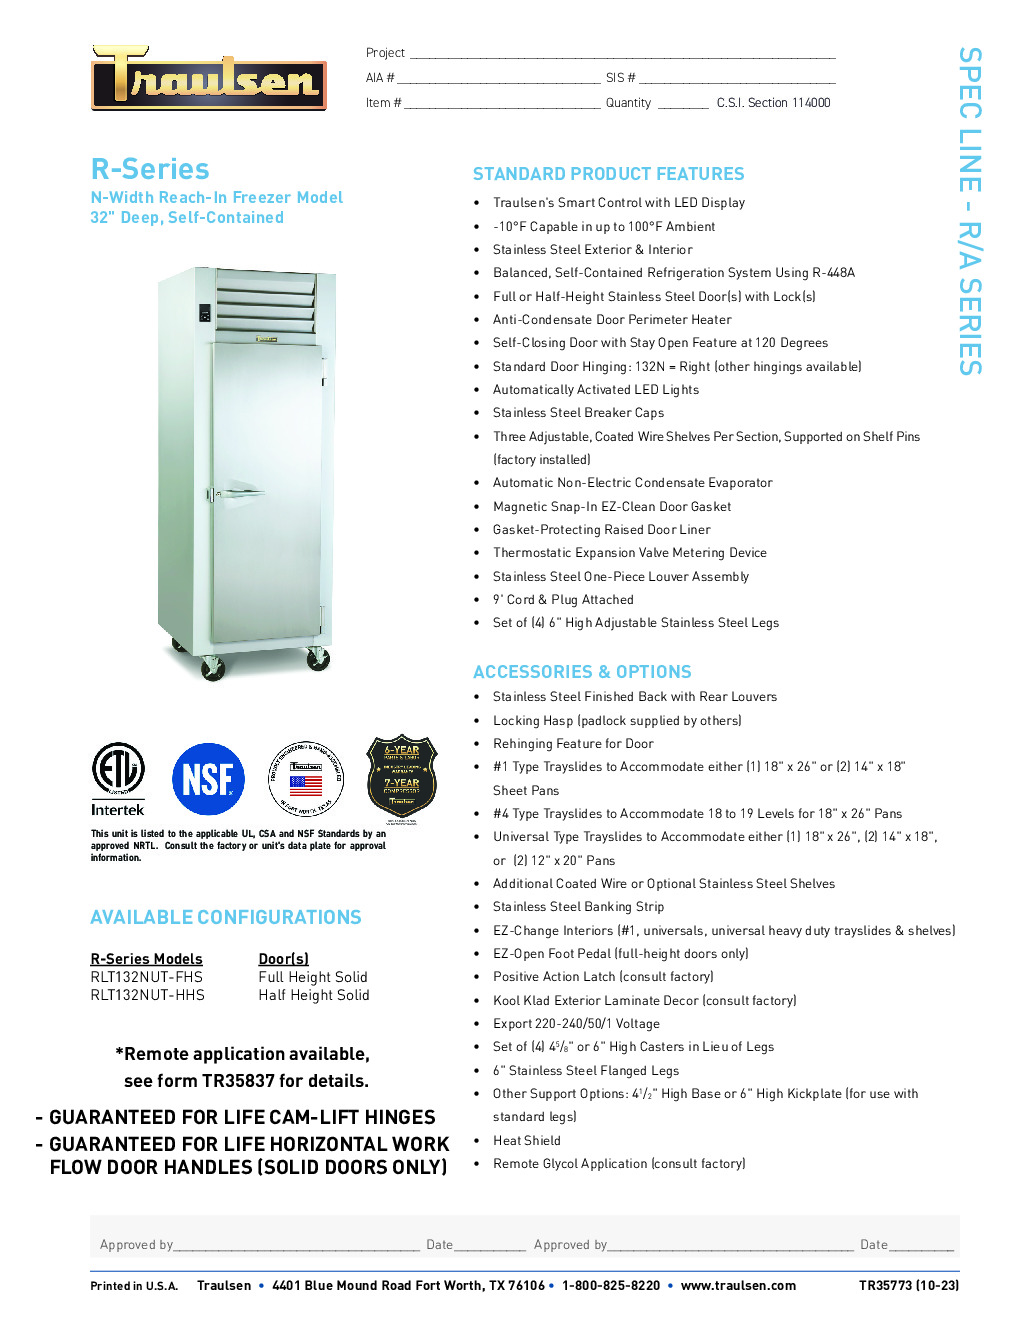 Traulsen RLT132NUT-FHS Reach-In Freezer